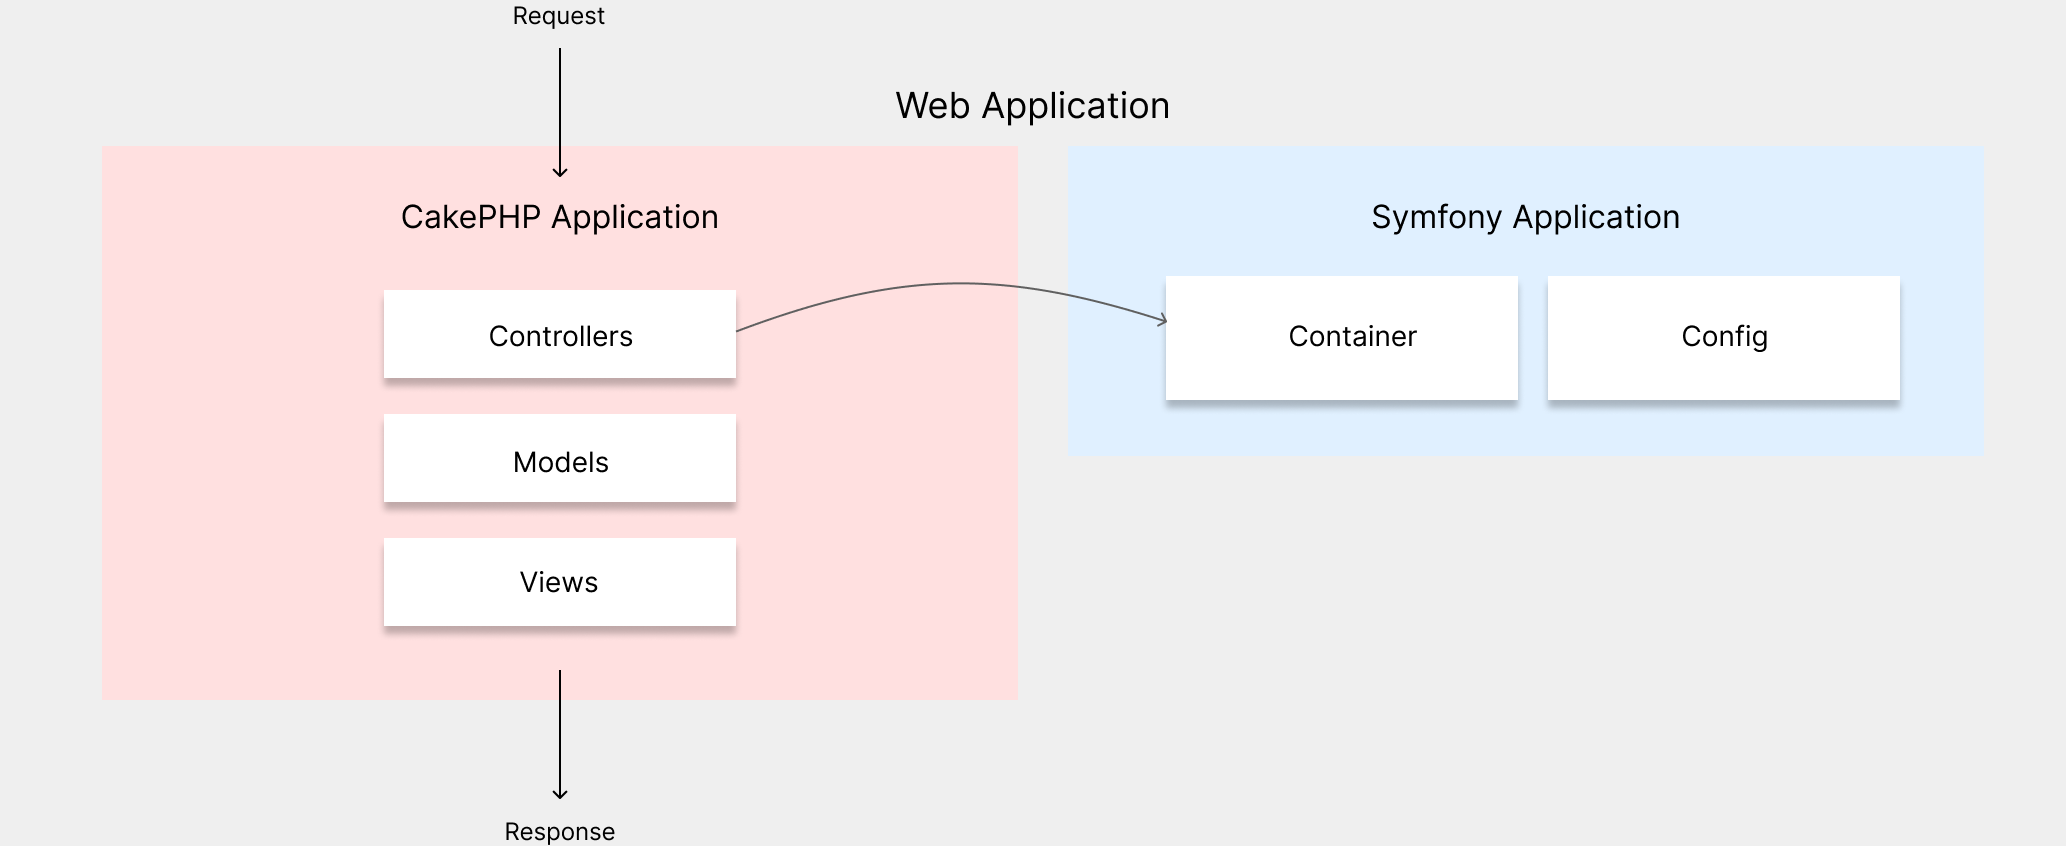 Архитектура приложения на этом этапе: мы используем приложение на CakePHP и два компонента Symfony